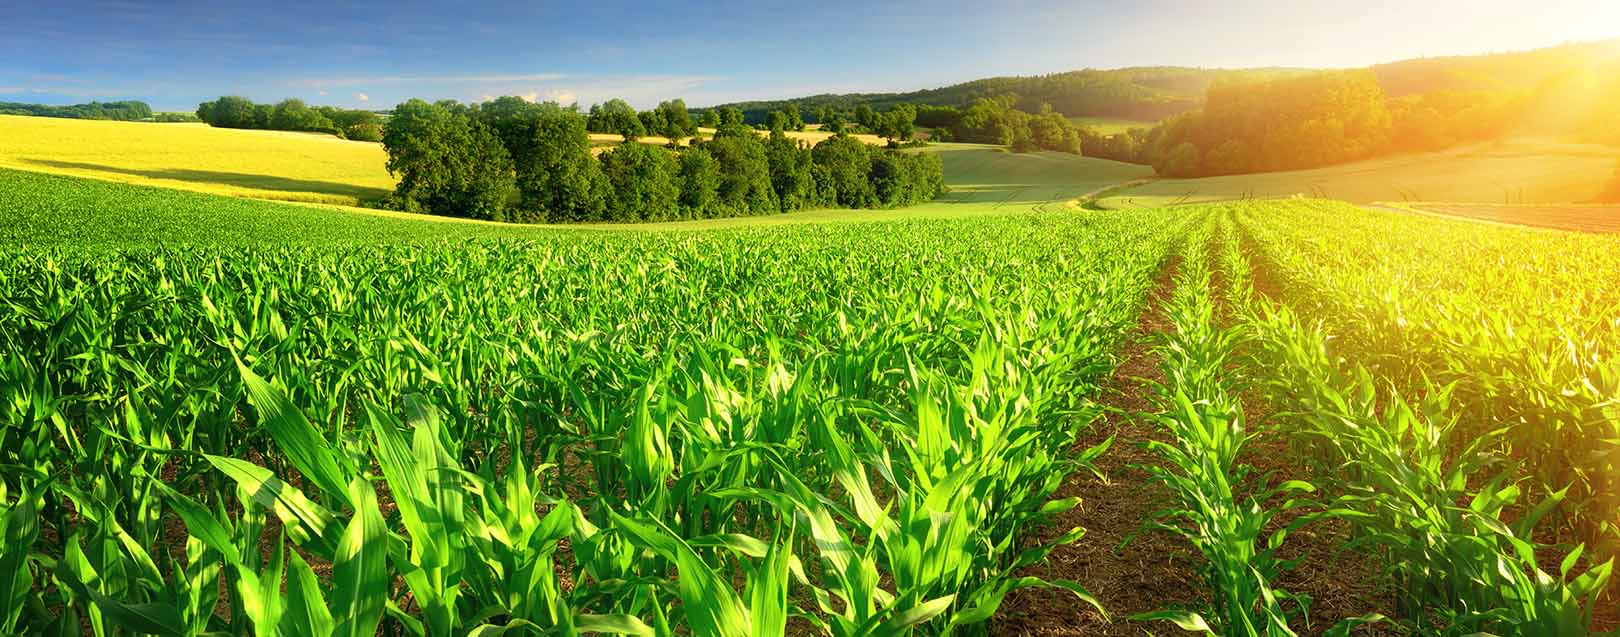 Non- urea fertilizers prices slashed